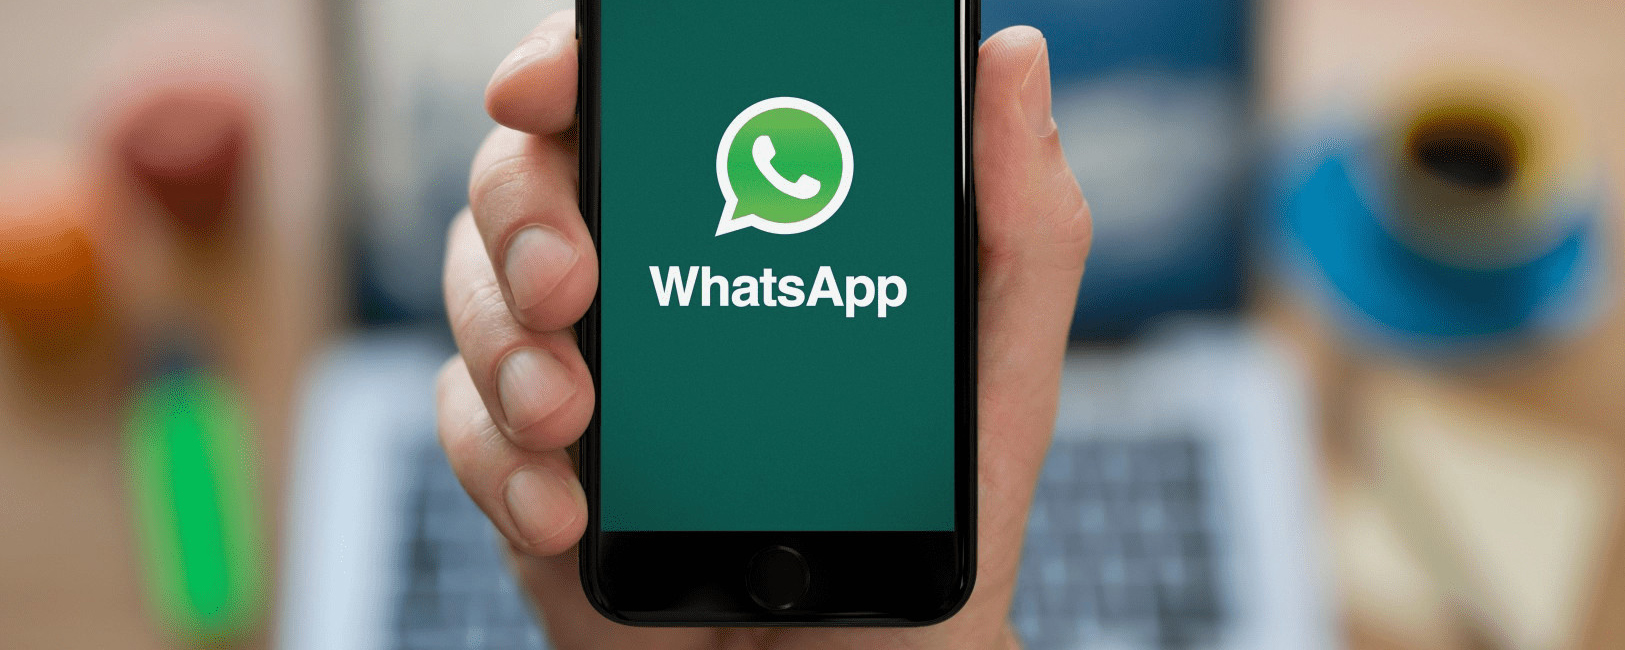 Эксперт Магомедов рассказал, какие секреты знает WhatsApp о пользователях